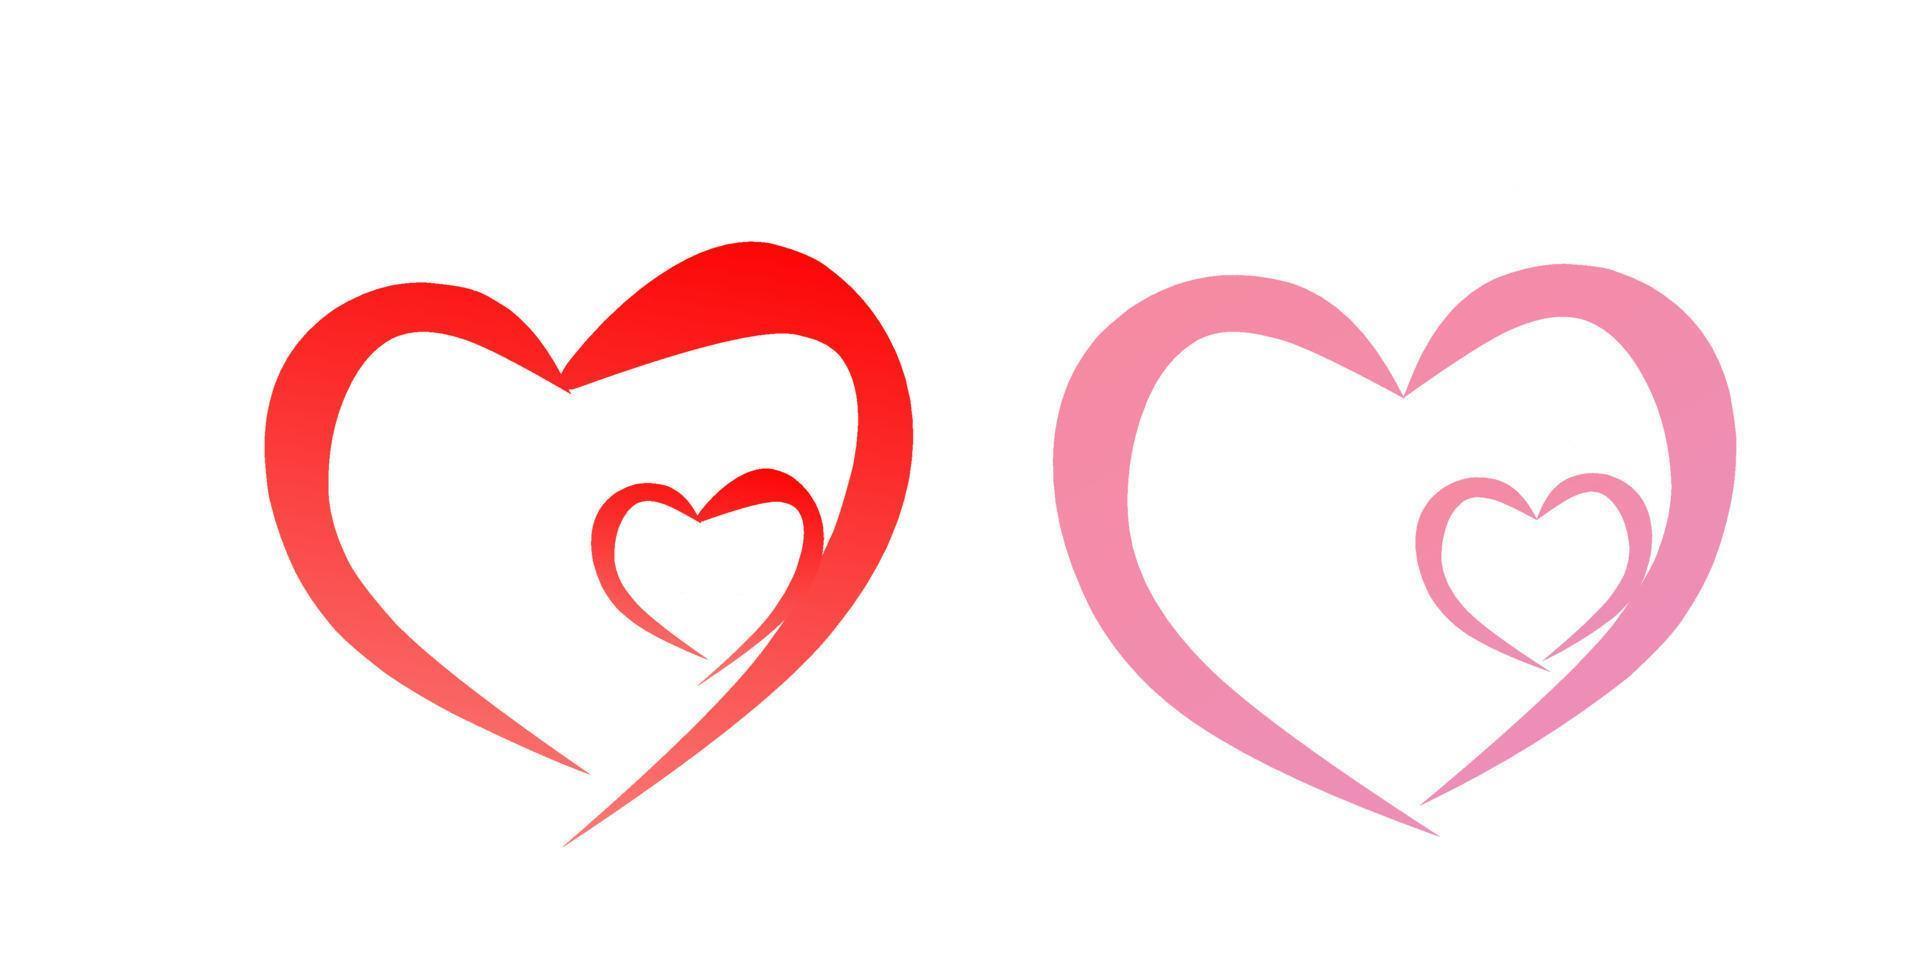 liefde hart icoon vector. creatief illustratie romantisch verzameling liefde symbolen. liefde concept. voor valentijnsdag dag, moeders dag, bruiloft, liefde en romantisch evenementen vector